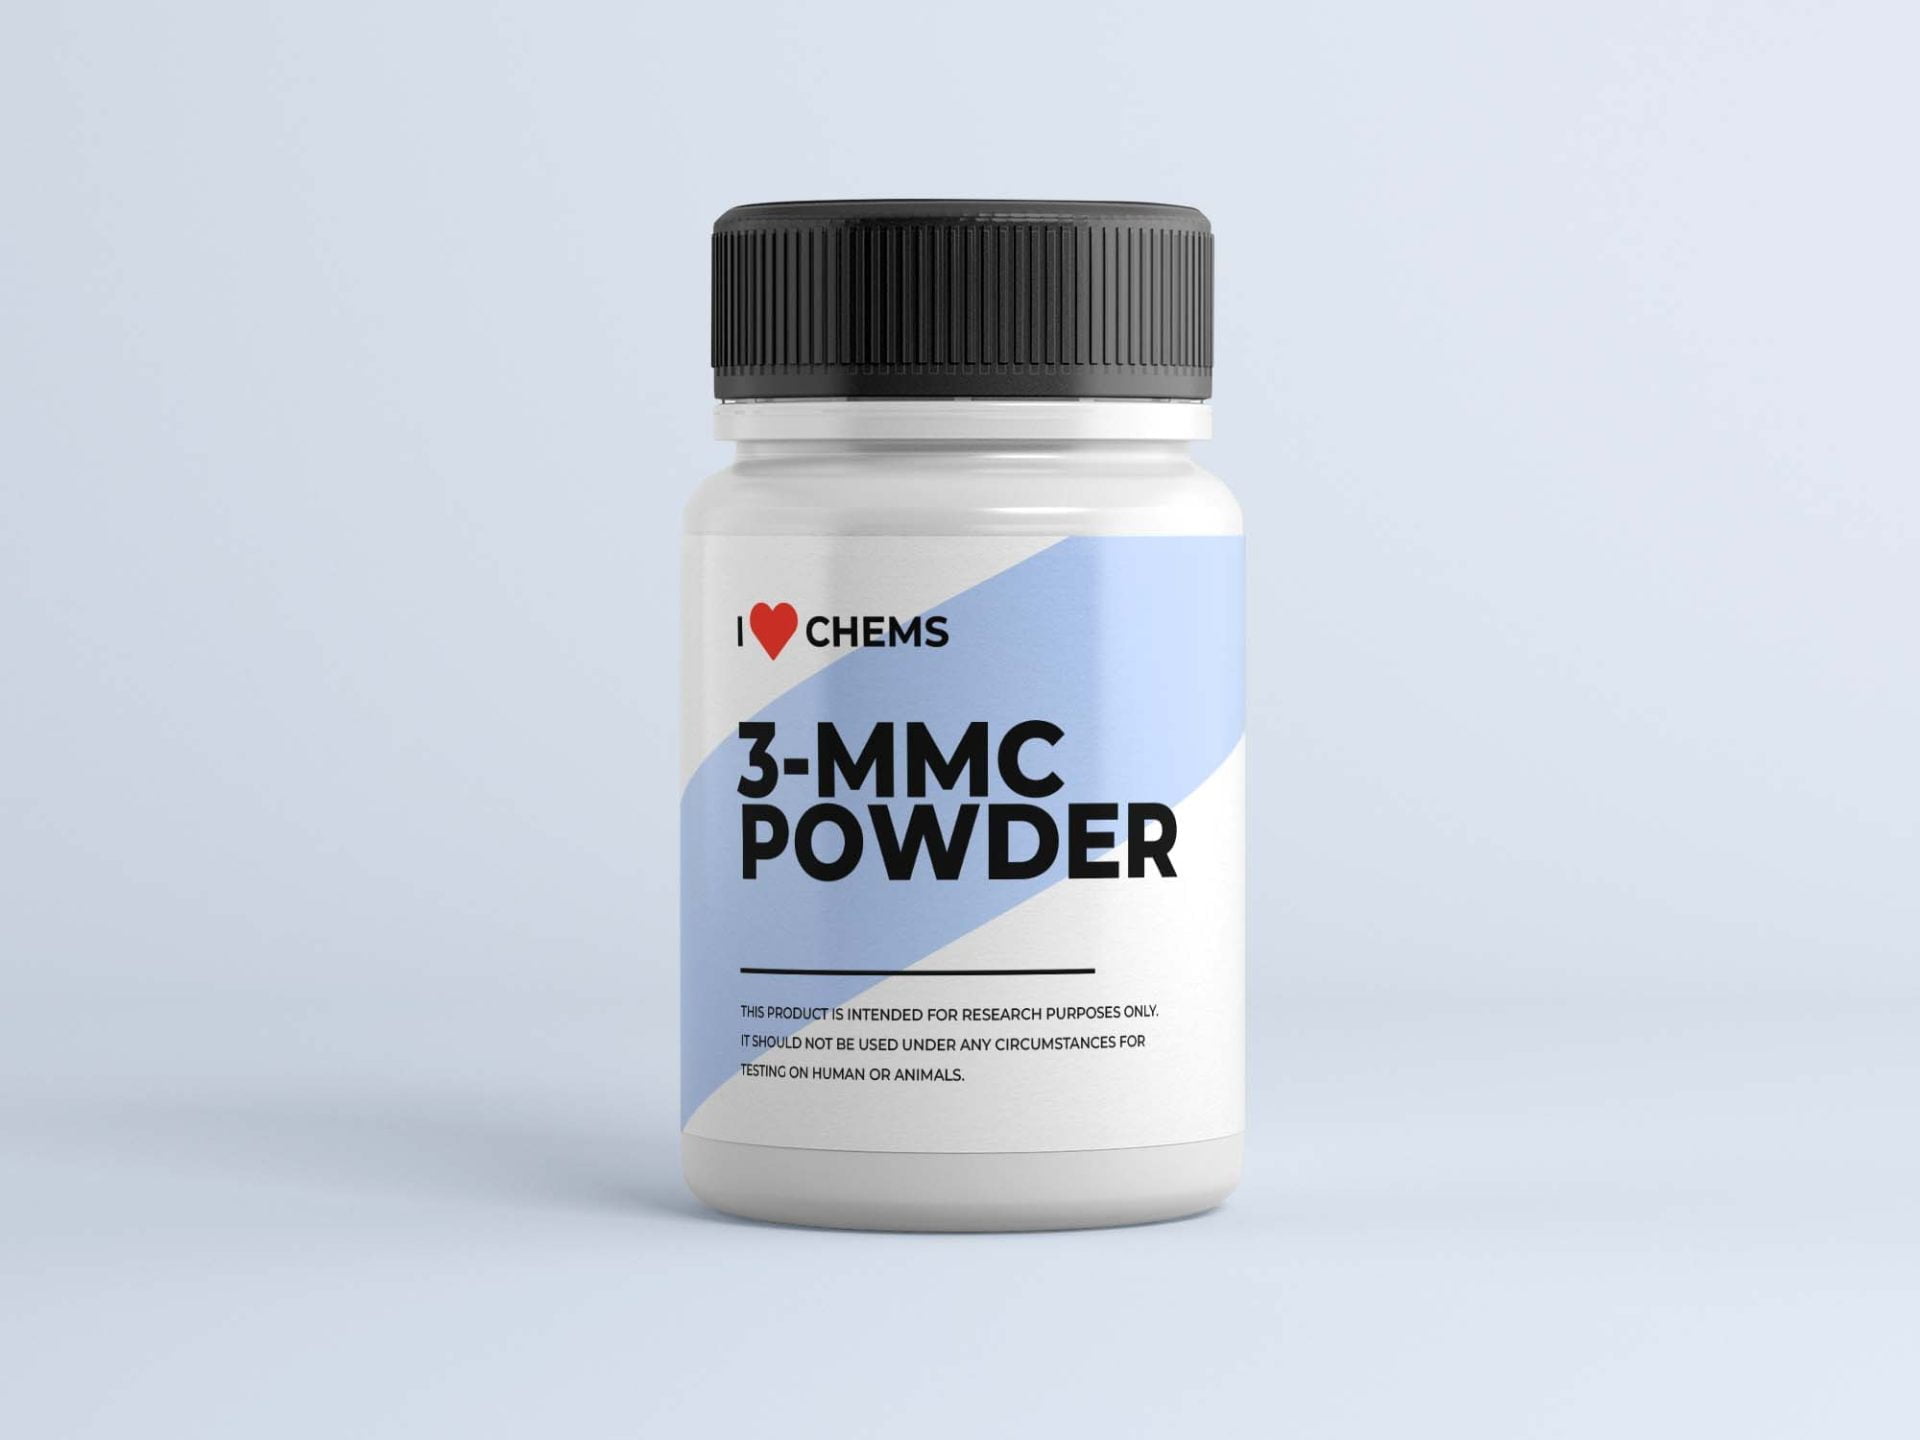 Kup 3 MMC Powder w I Love Chems. 3 Sklep MMC w UE. Zaufany dostawca RC